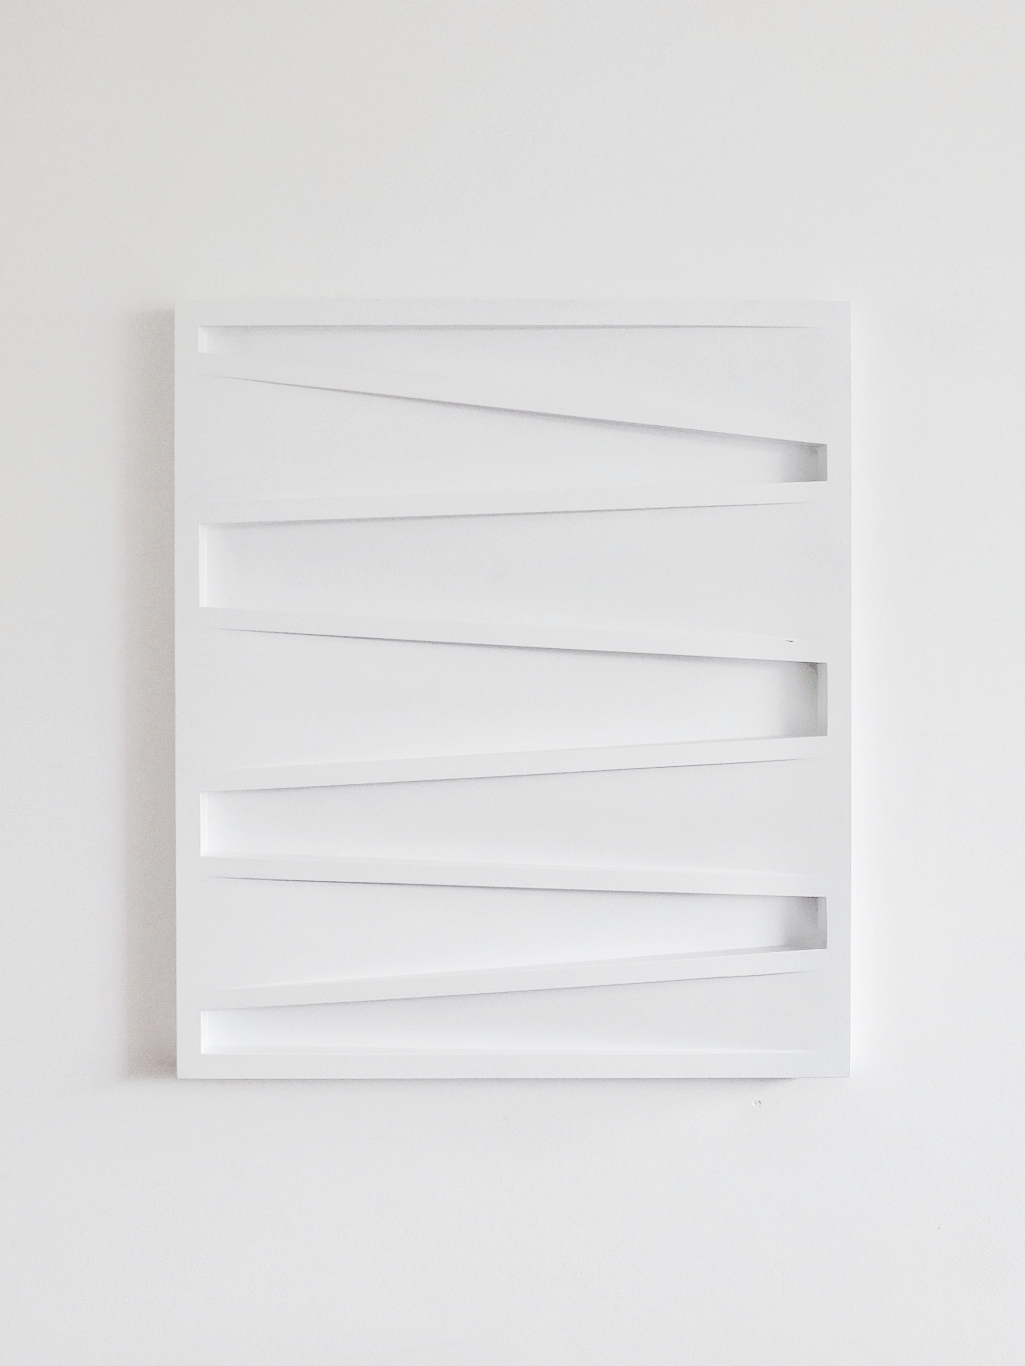 Sander Martijn Jonker, 2016, abstract relief, R165, 71,5 x 82,5 cm